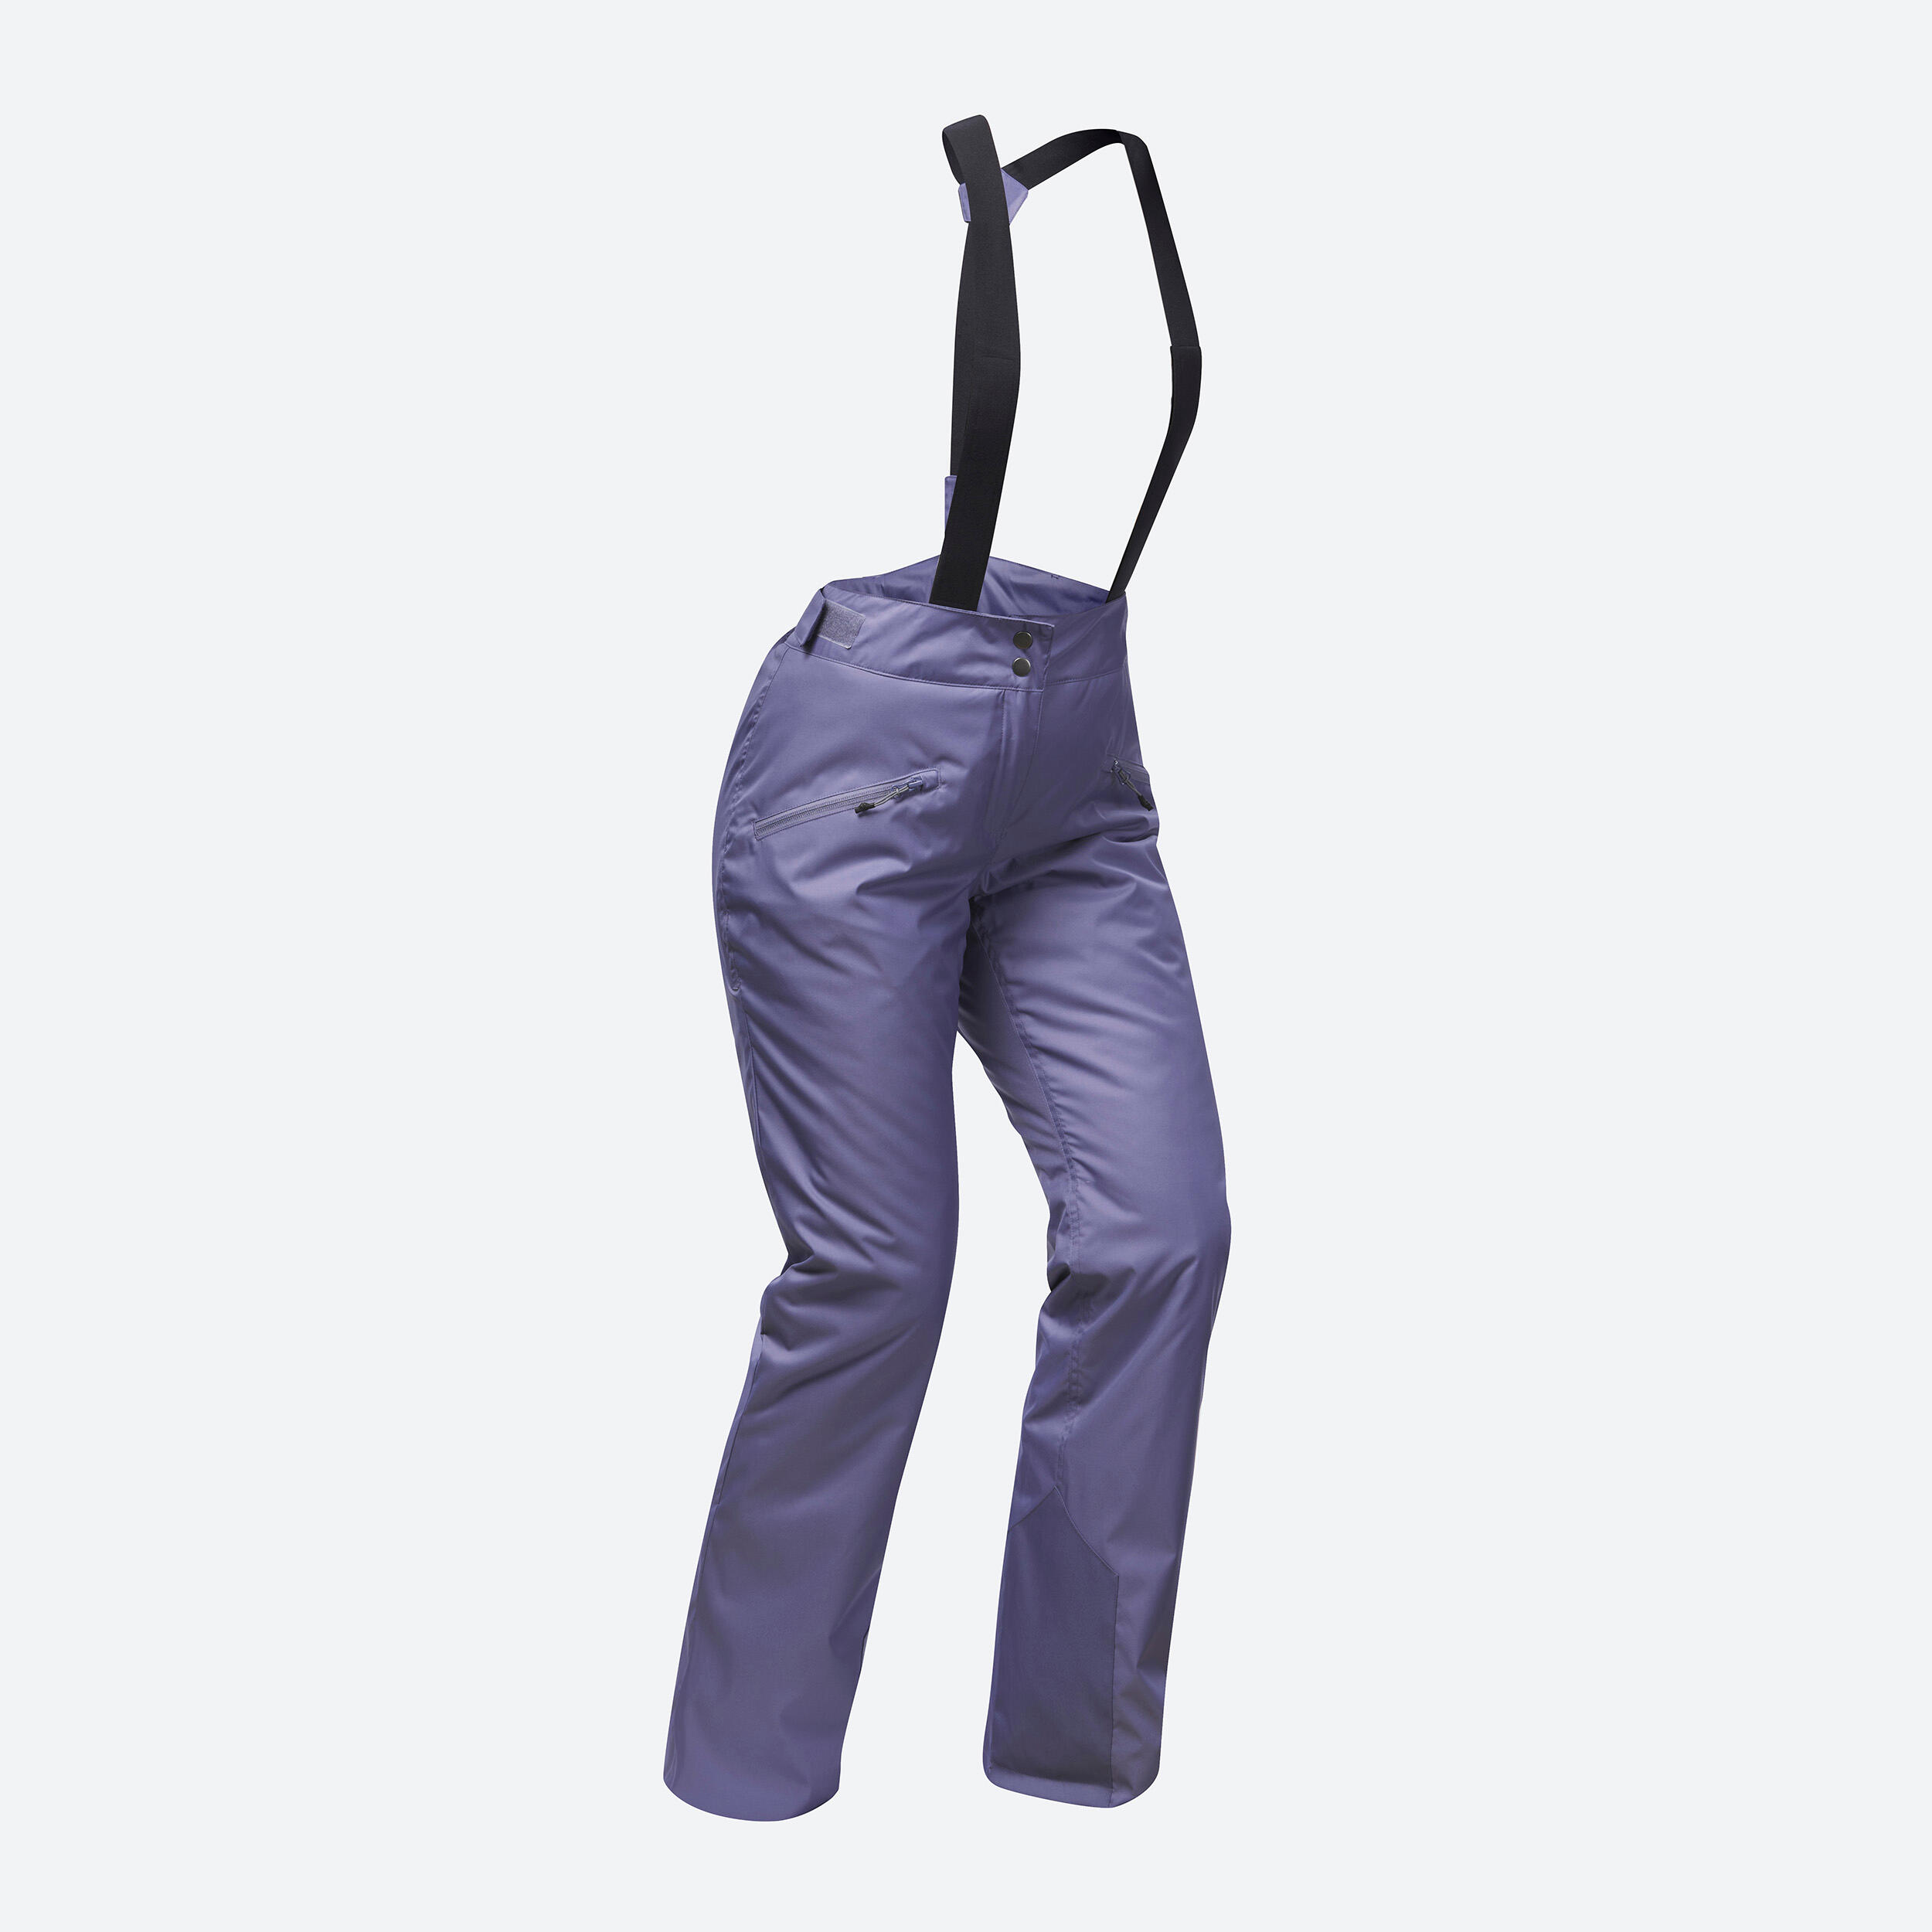 pantalon de ski chaud femme - 180 violet - wedze